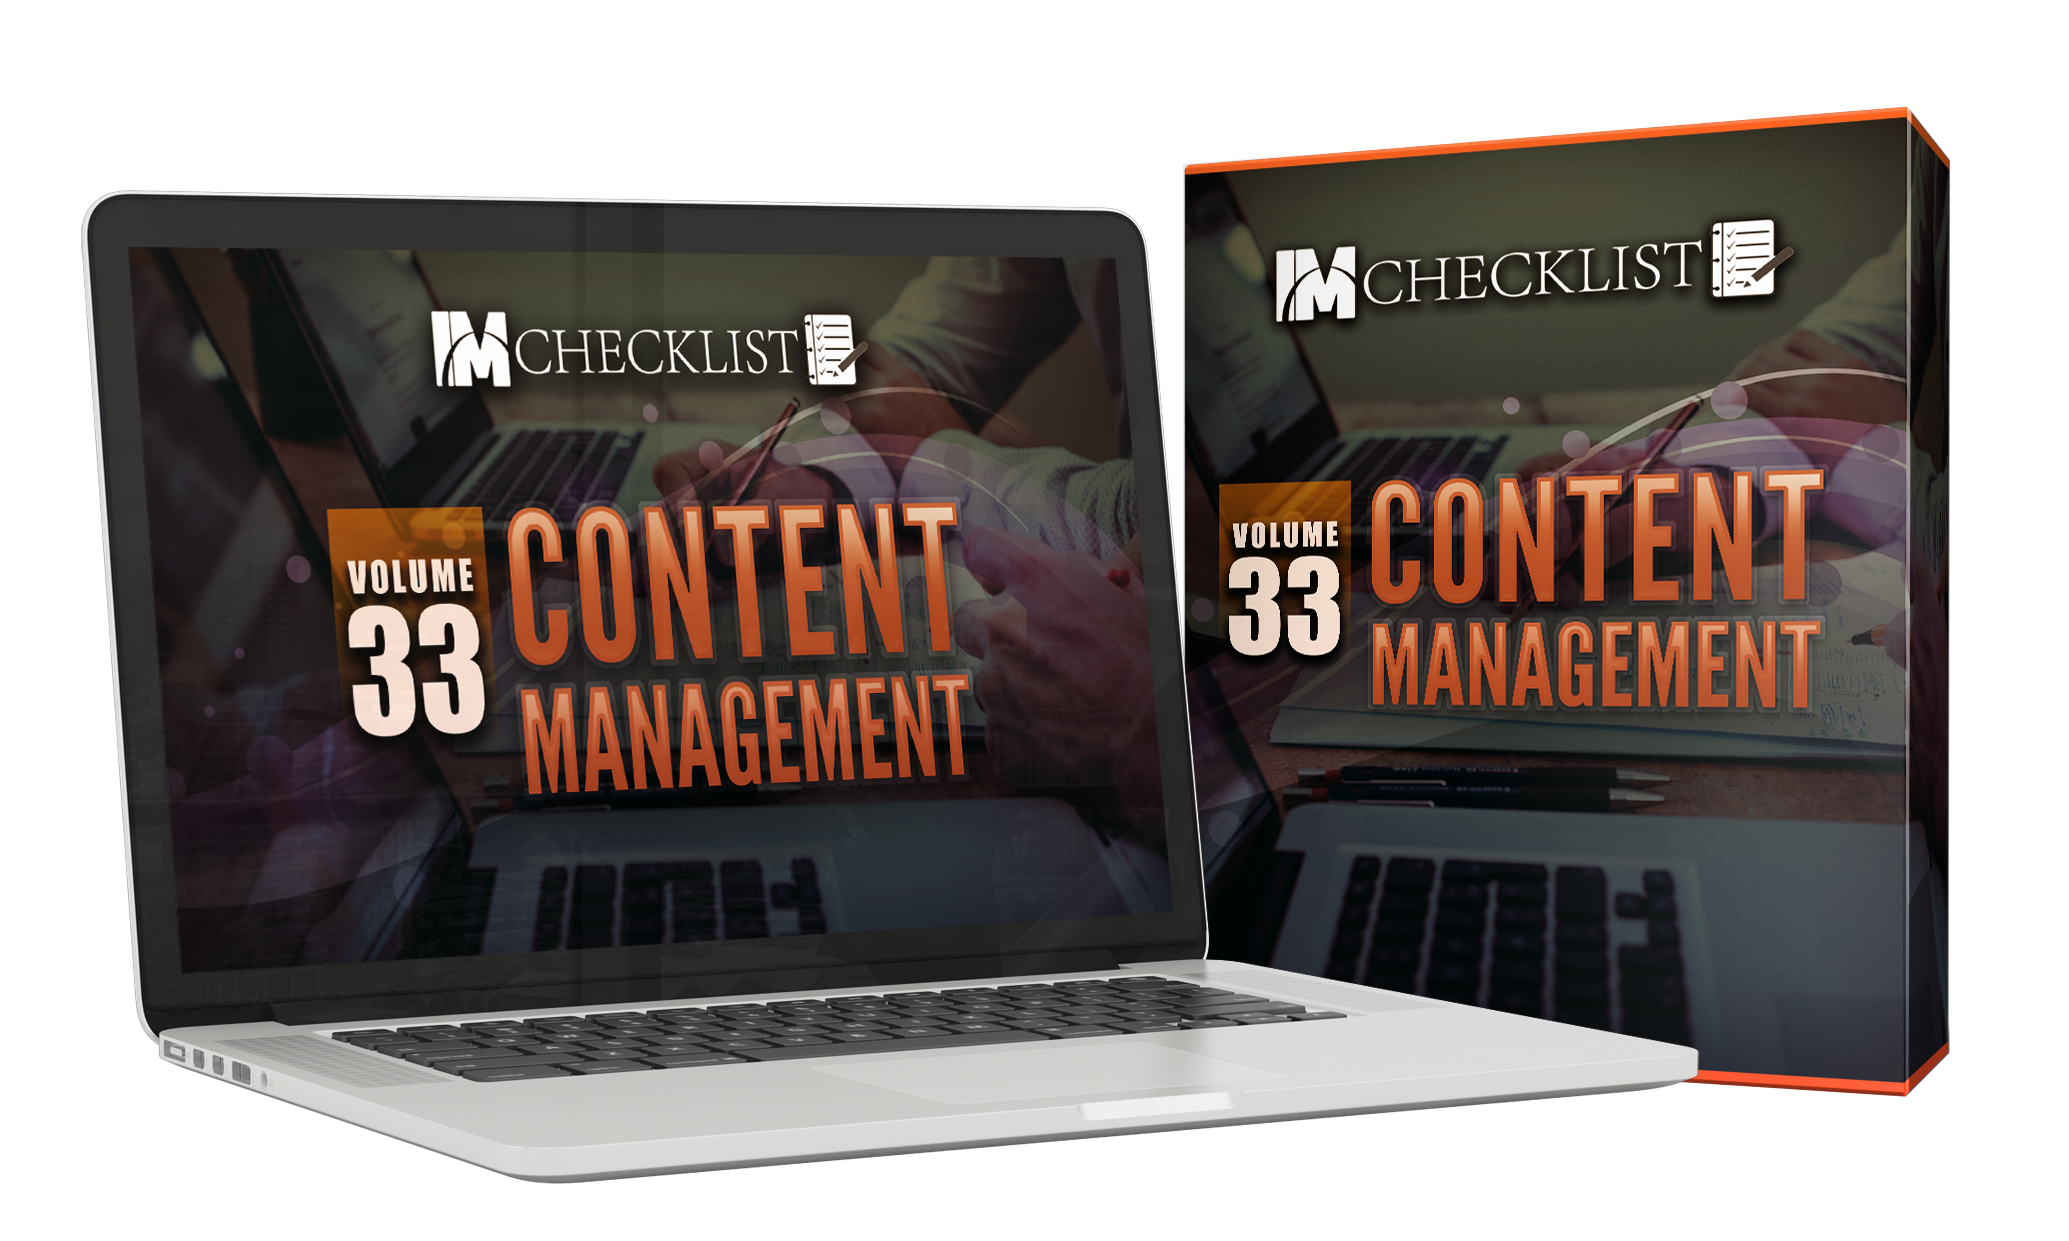 IM Checklist Content Marketing